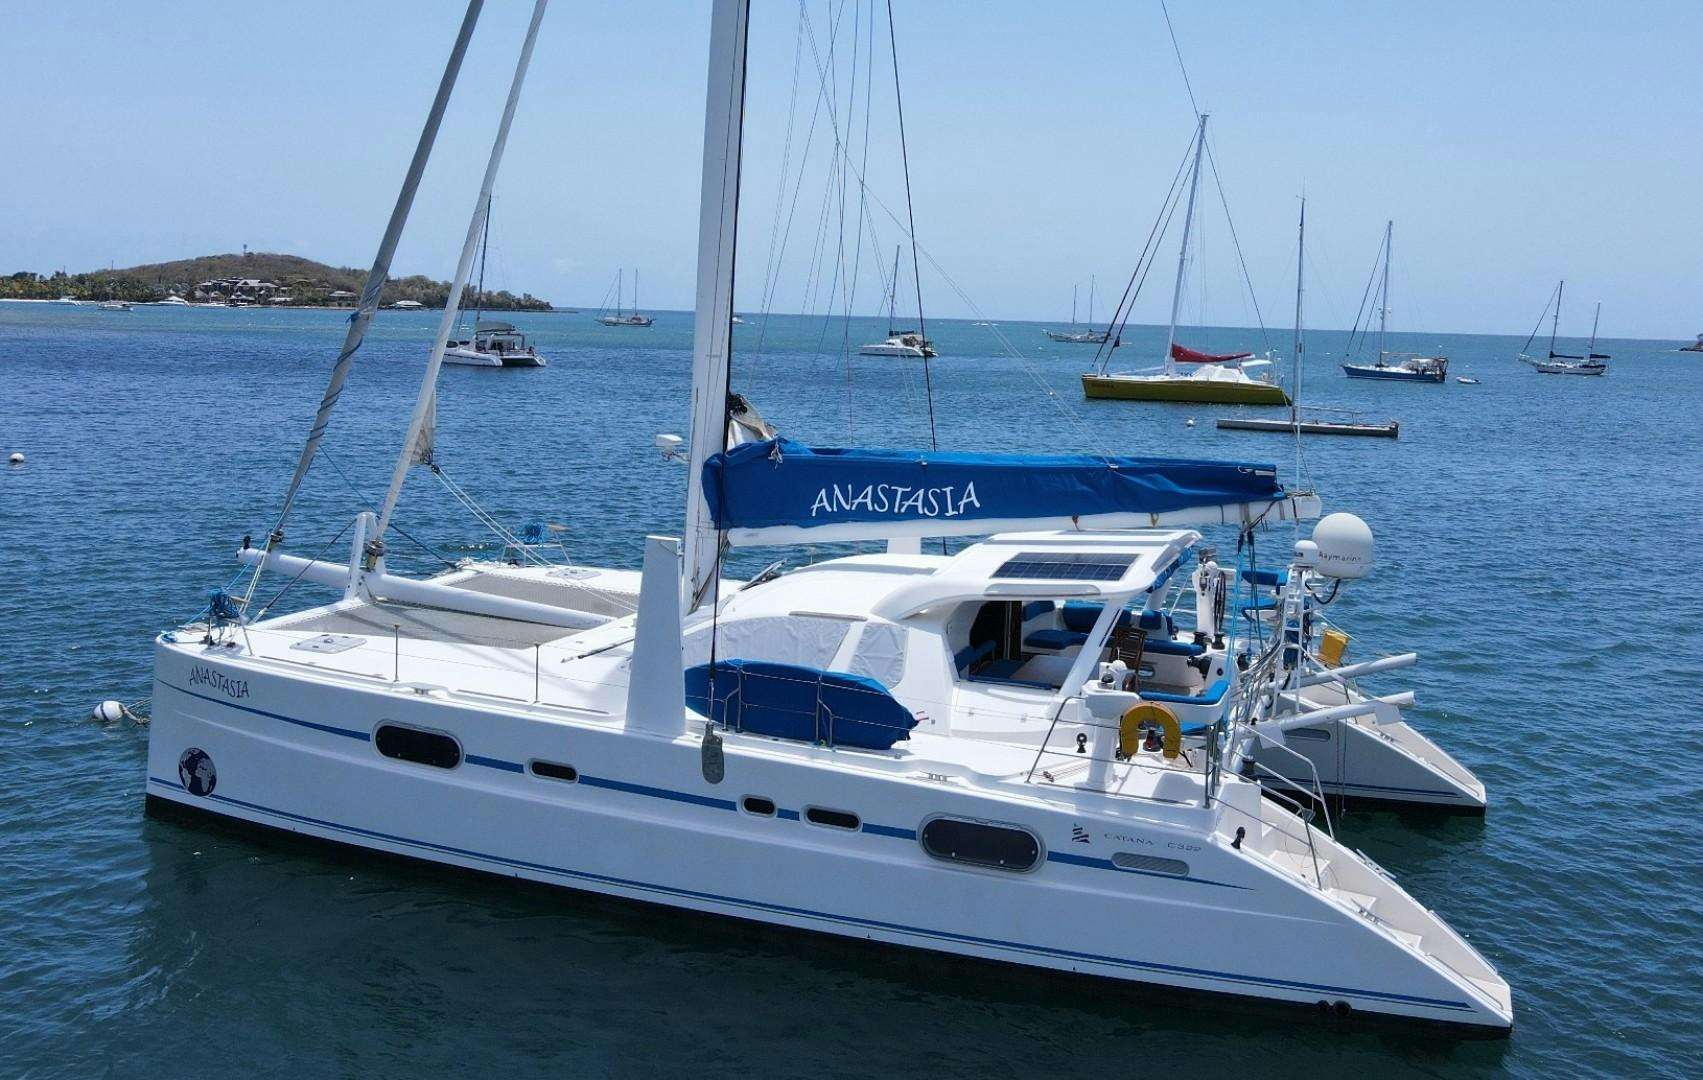 Anastasia Yacht For Sale